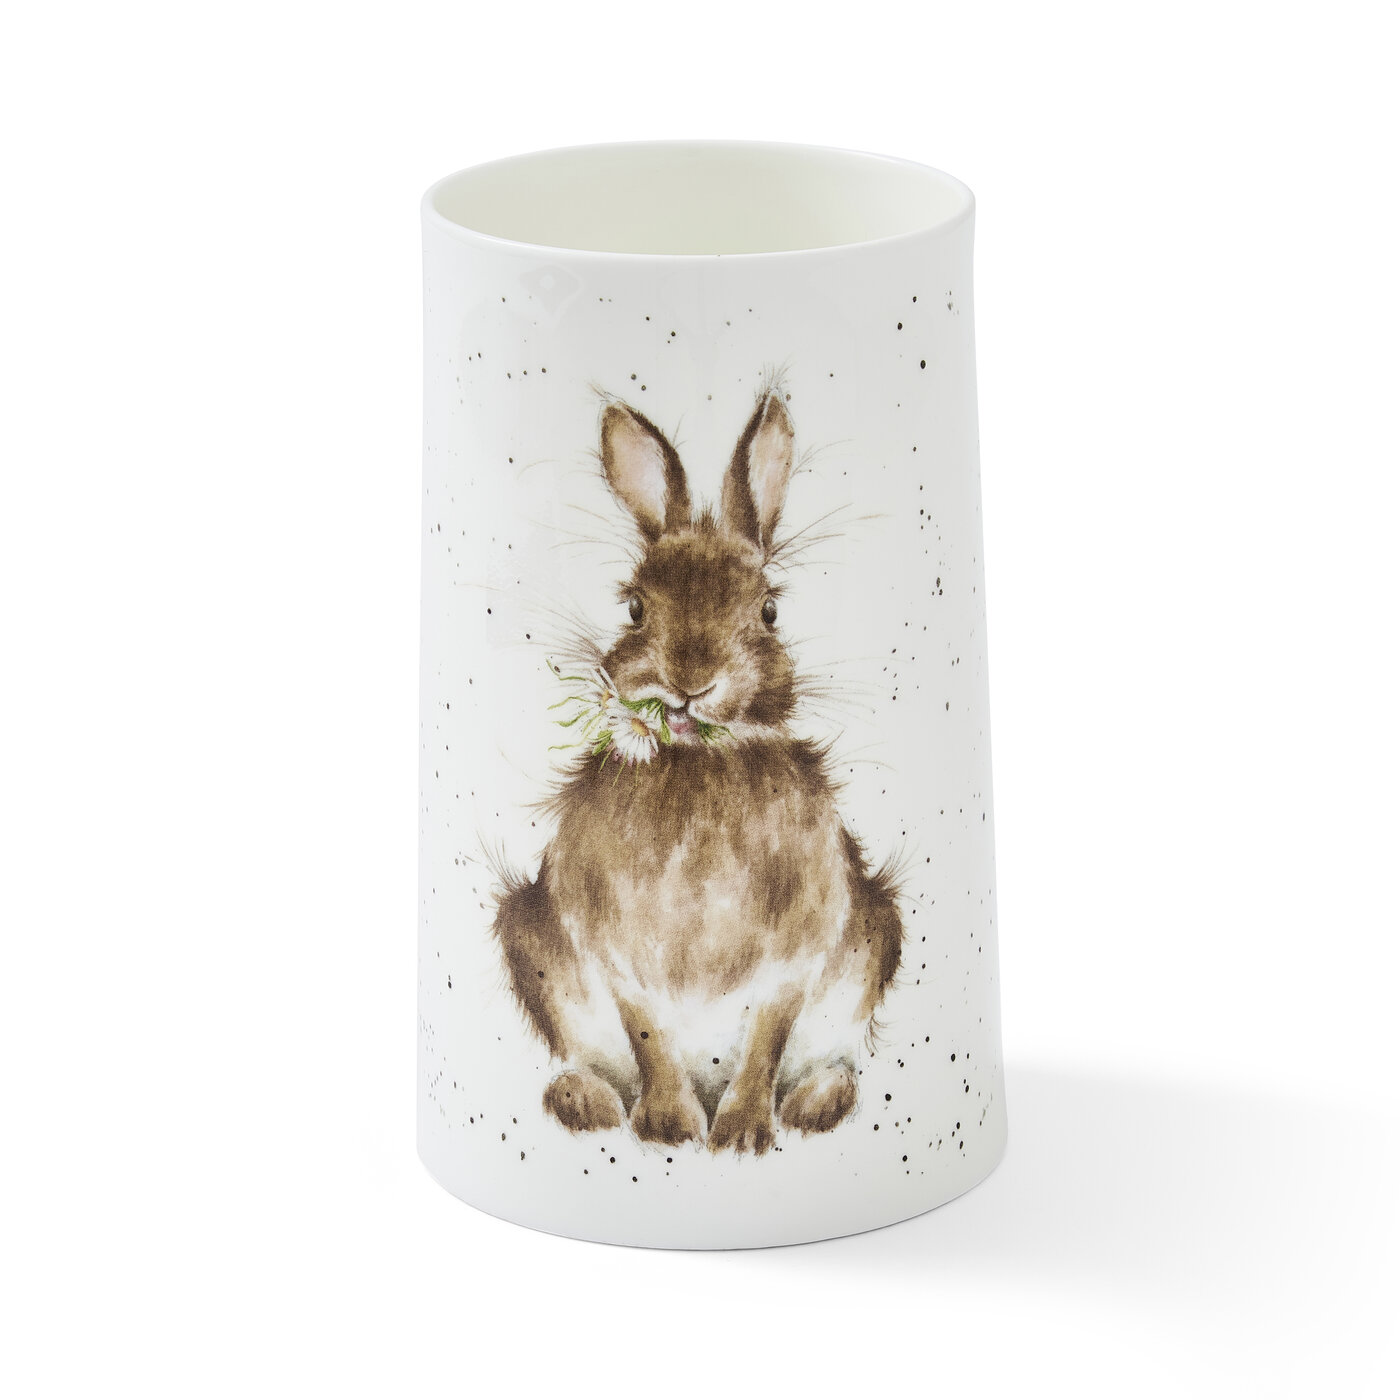 Wrendale Royal Worcester Rabbit Vase